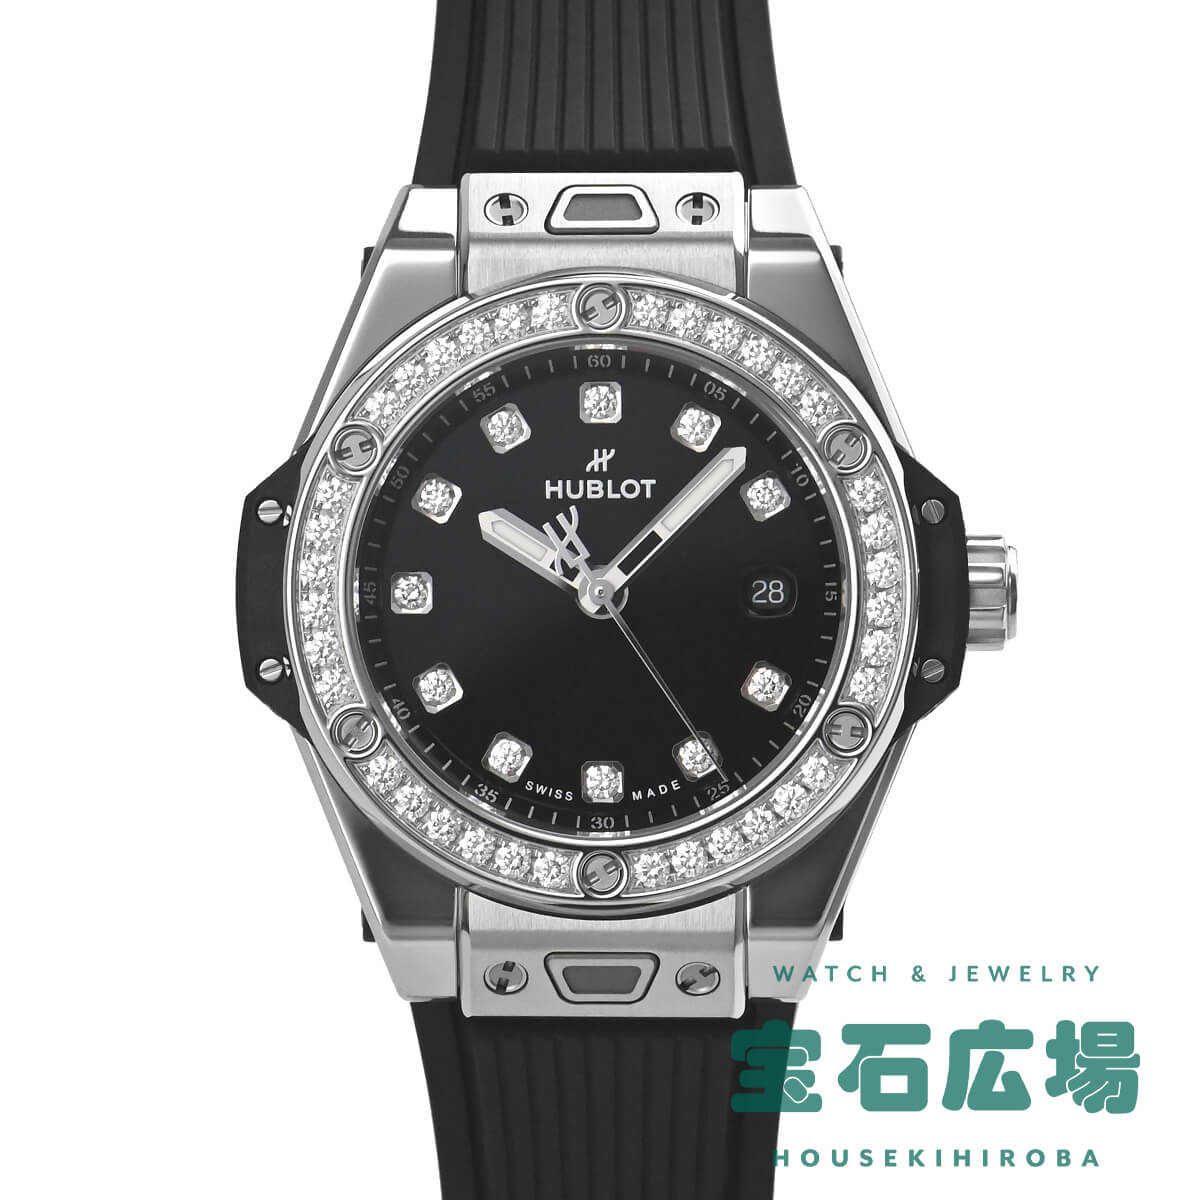 ウブロ HUBLOT ビッグバン ワンクリック スチールダイヤモンド 485.SX.1270.RX.1204 新品 レディース 腕時計